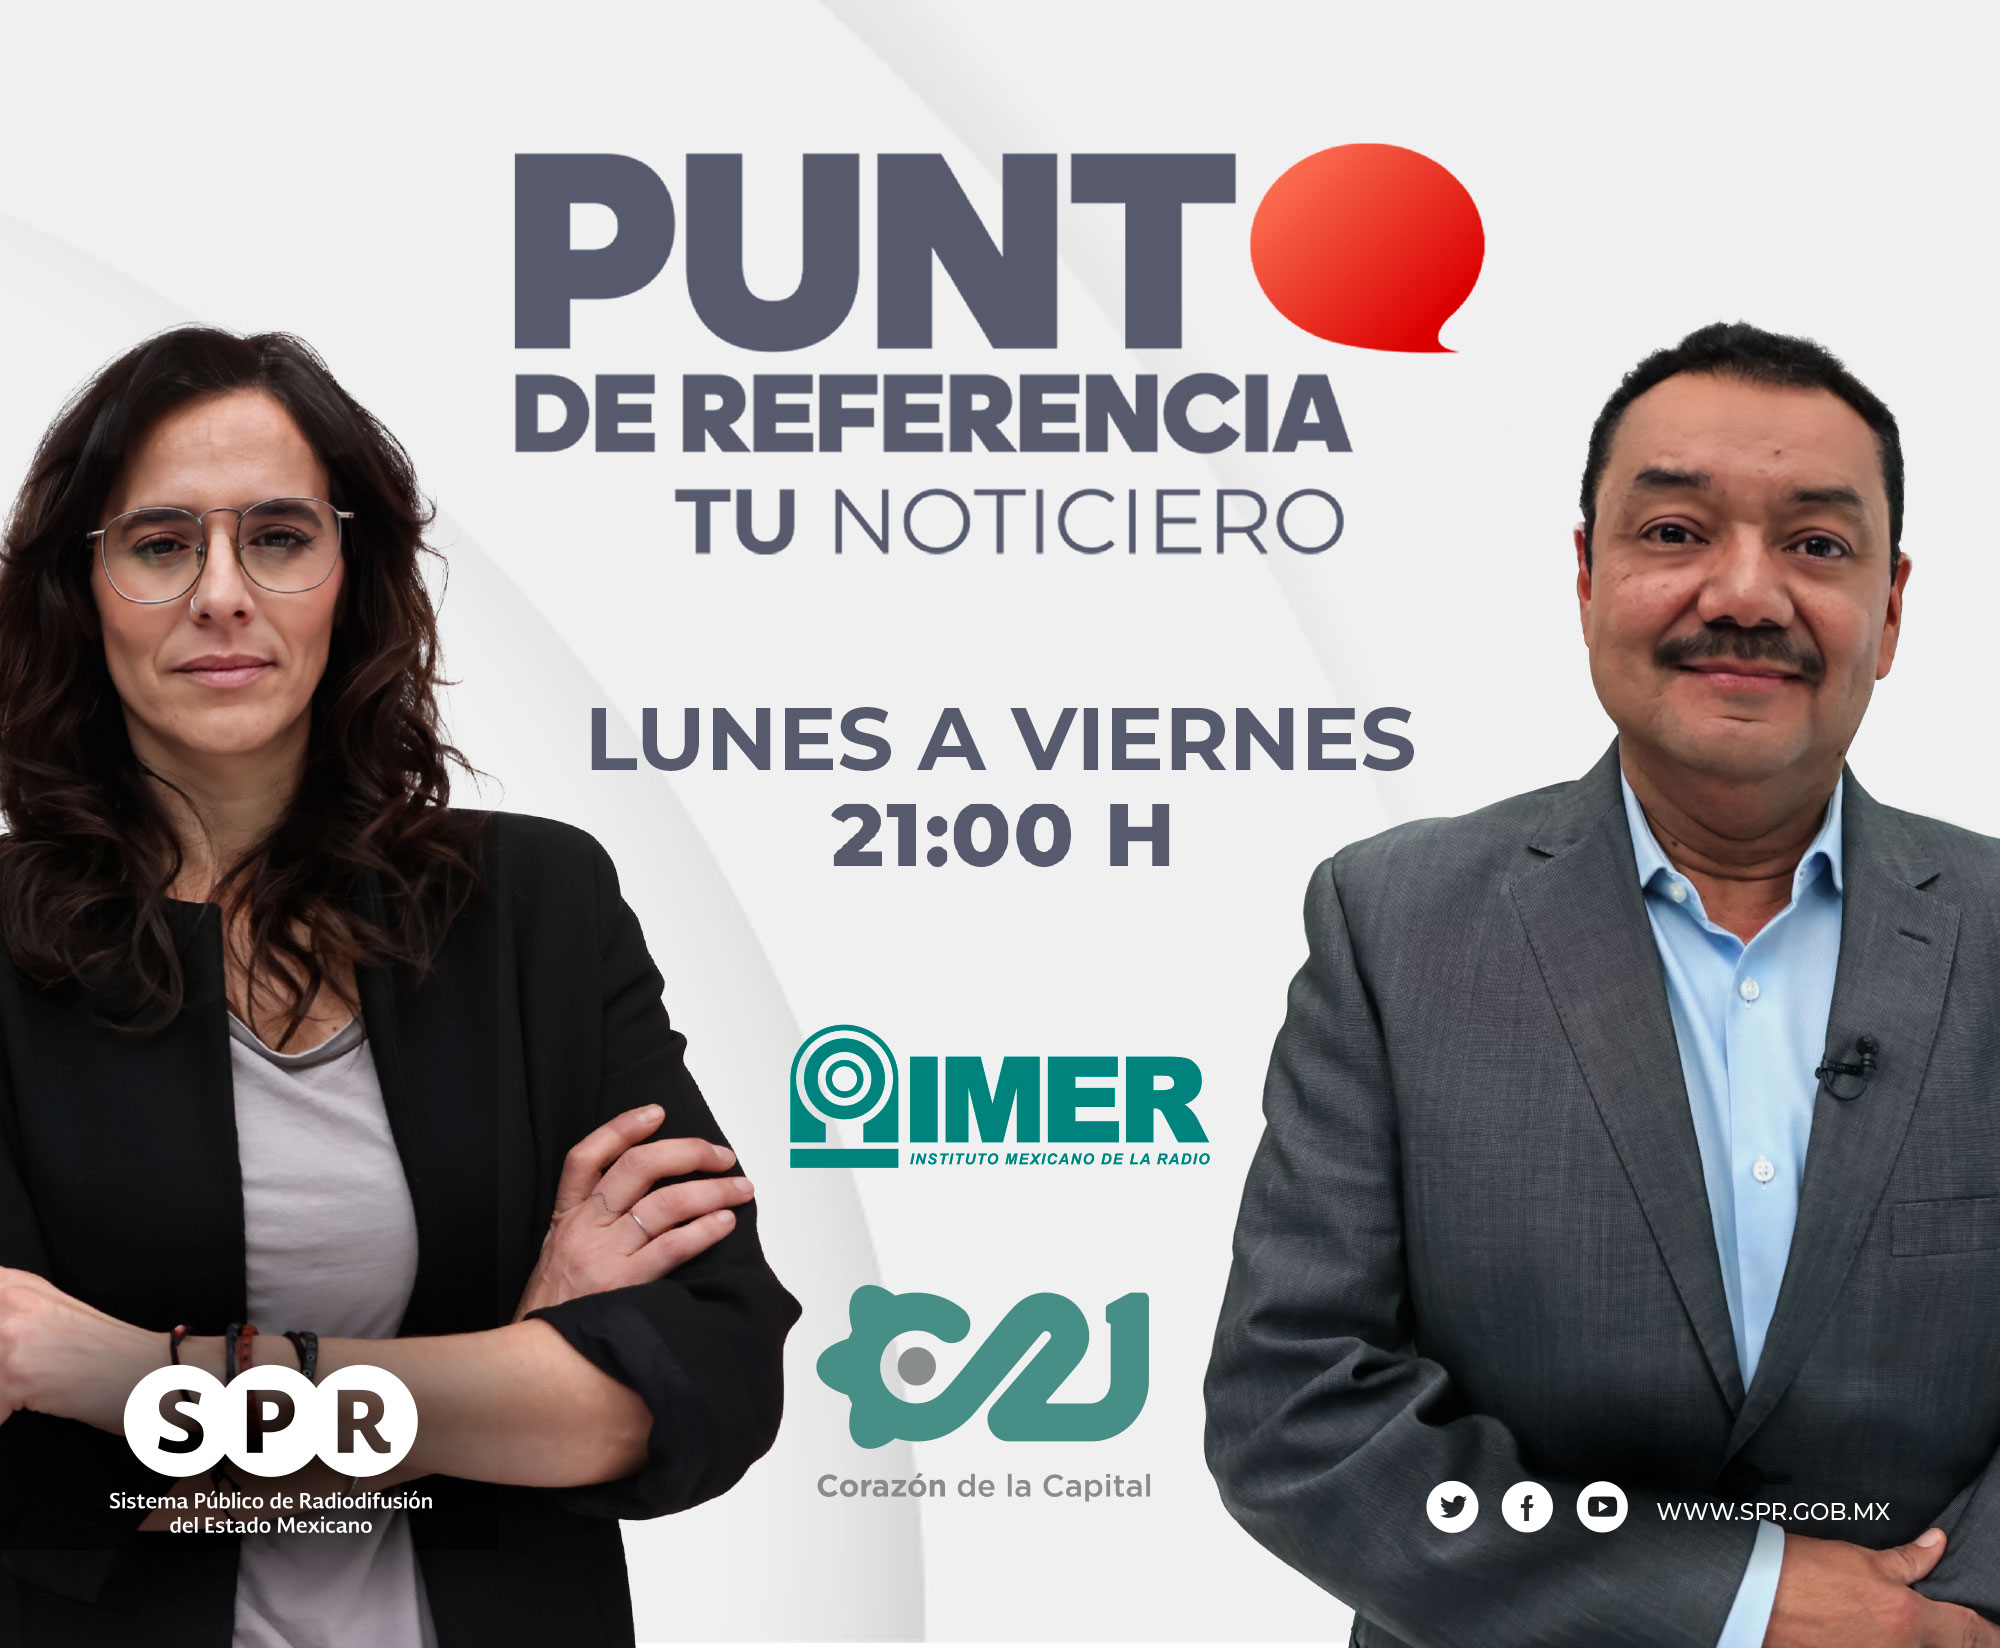 SPR - Sistema Público de Radiodifusión de Estado Mexicano